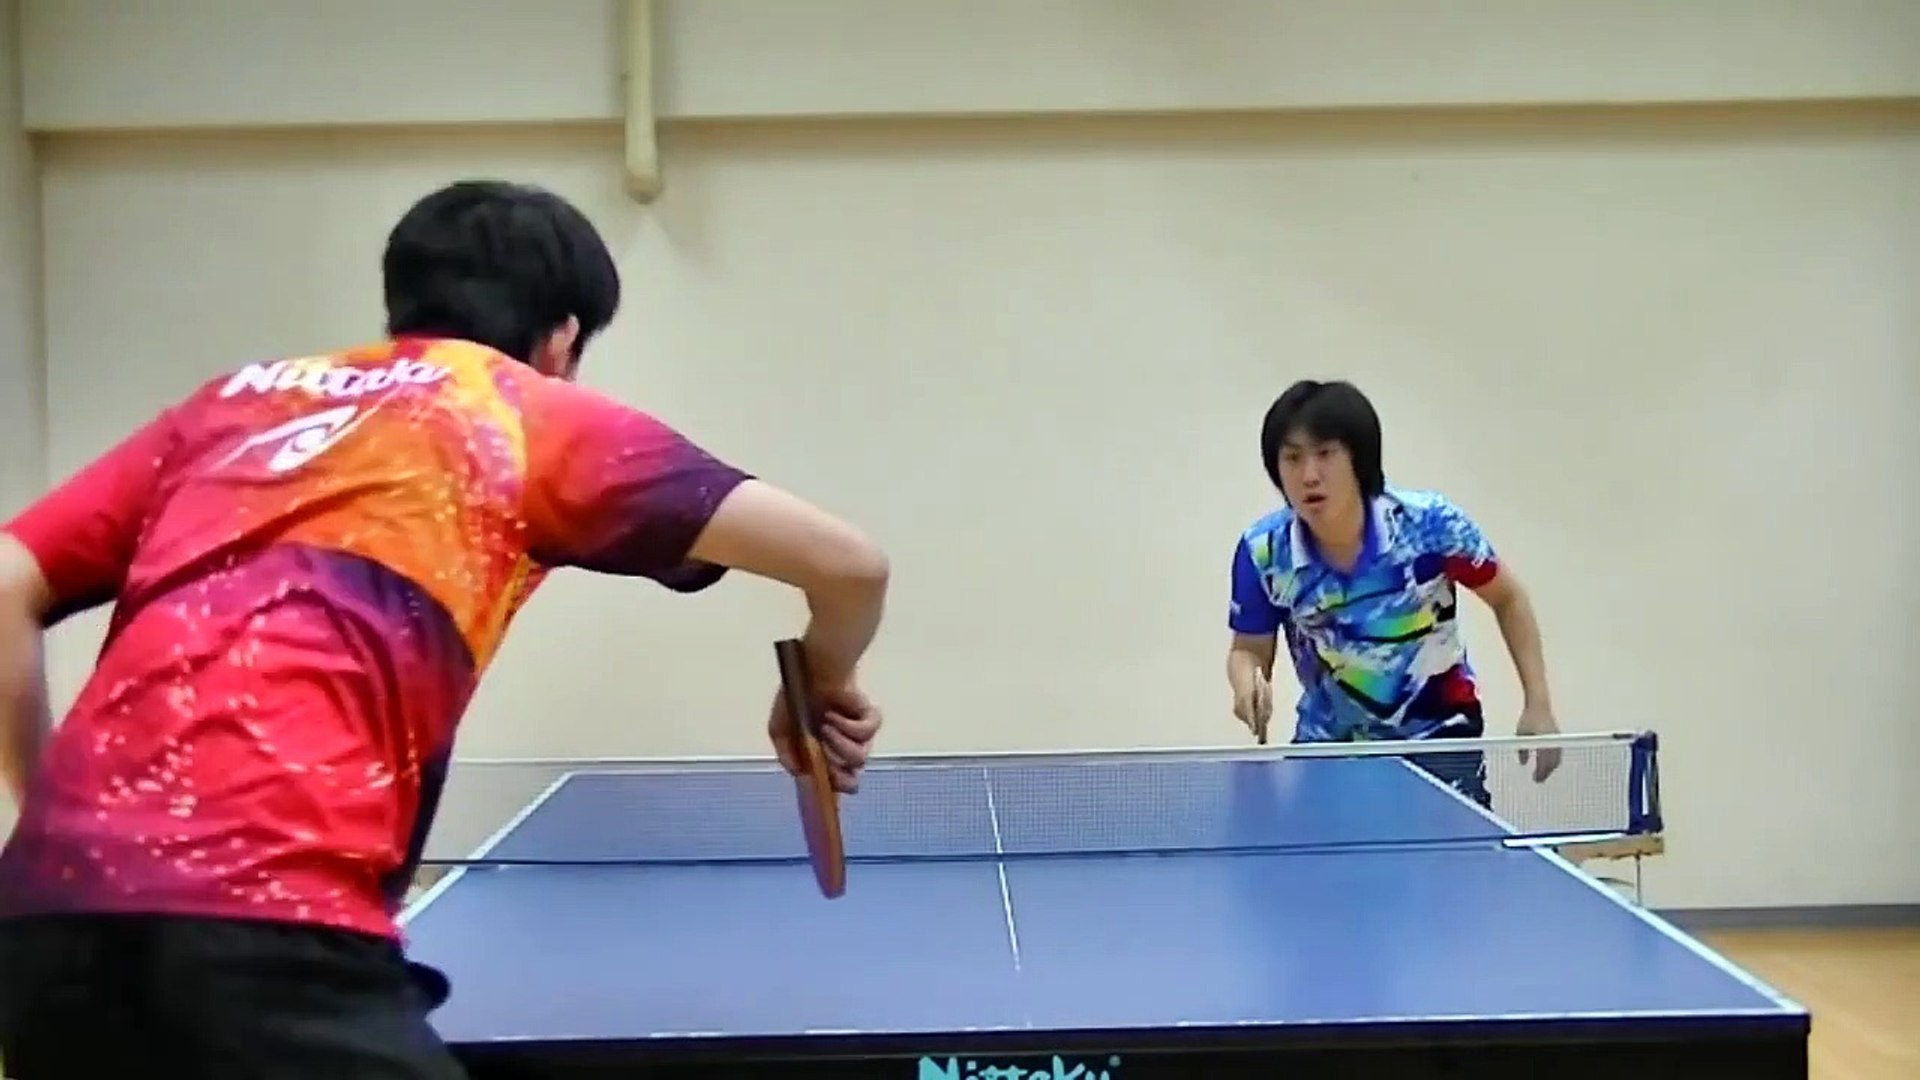 Grosse démo de Ping pong par ce japonais : trick de fou - Vidéo Dailymotion